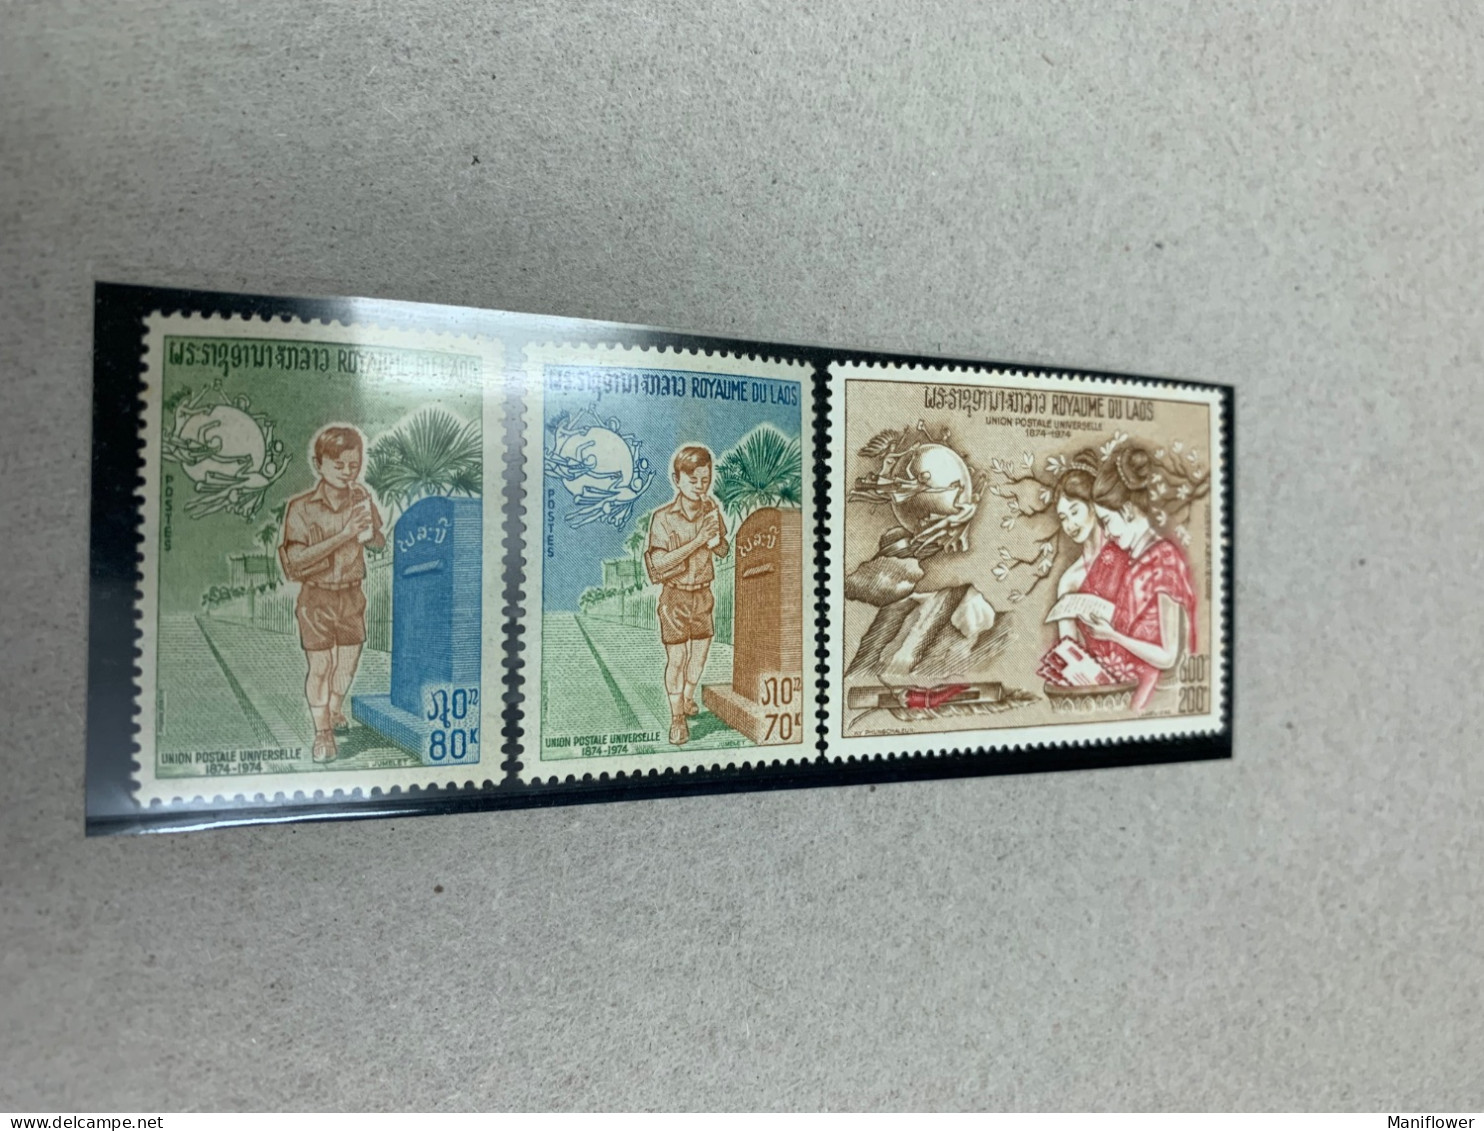 Laos Stamp UPU Post Box MNH - UPU (Universal Postal Union)